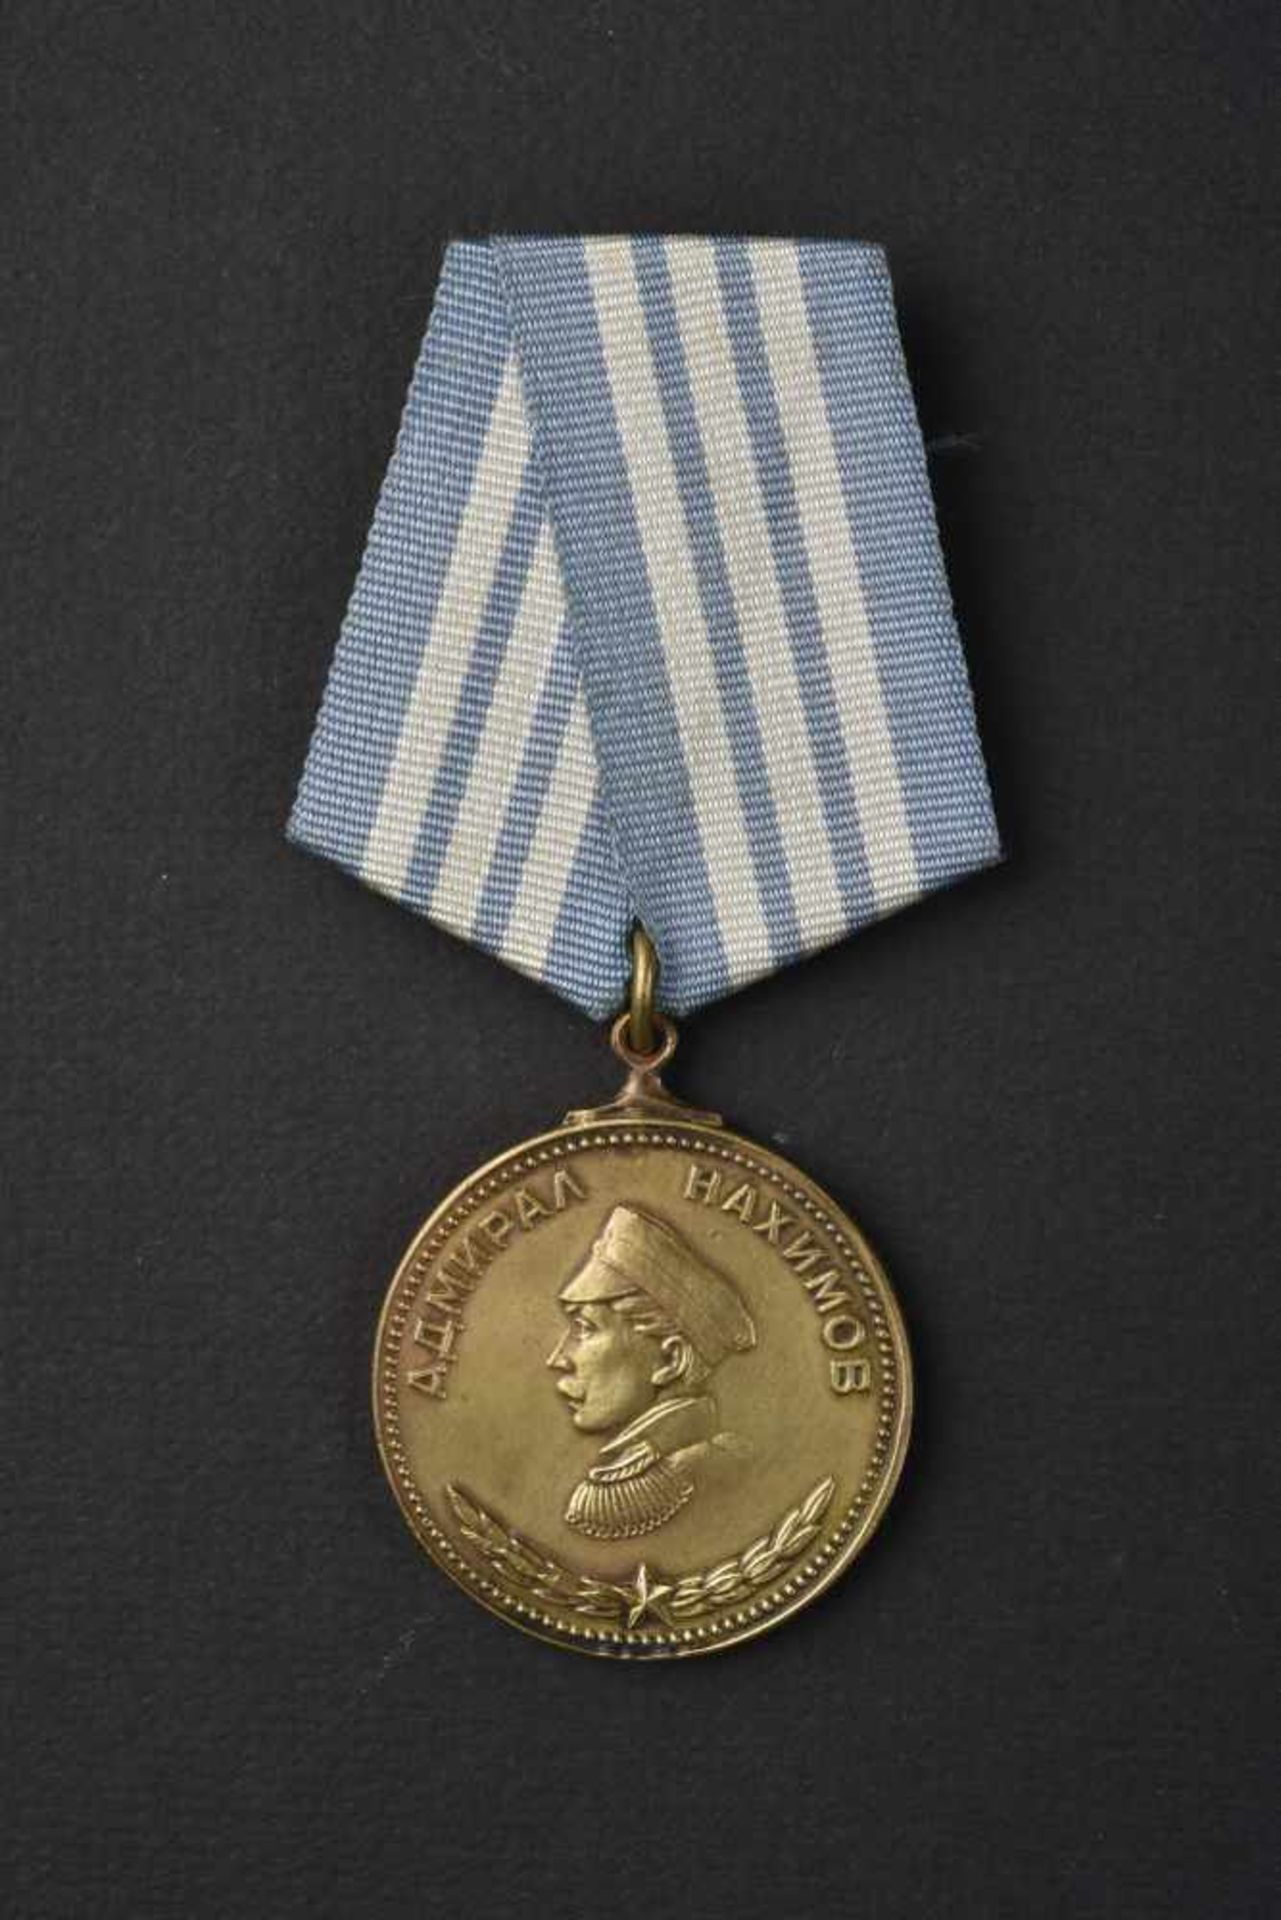 Médaille de Nakhimov n° 1234 attribuée à FADEEV Vladimir Petrovich le 09 mars 1945. Les recherches